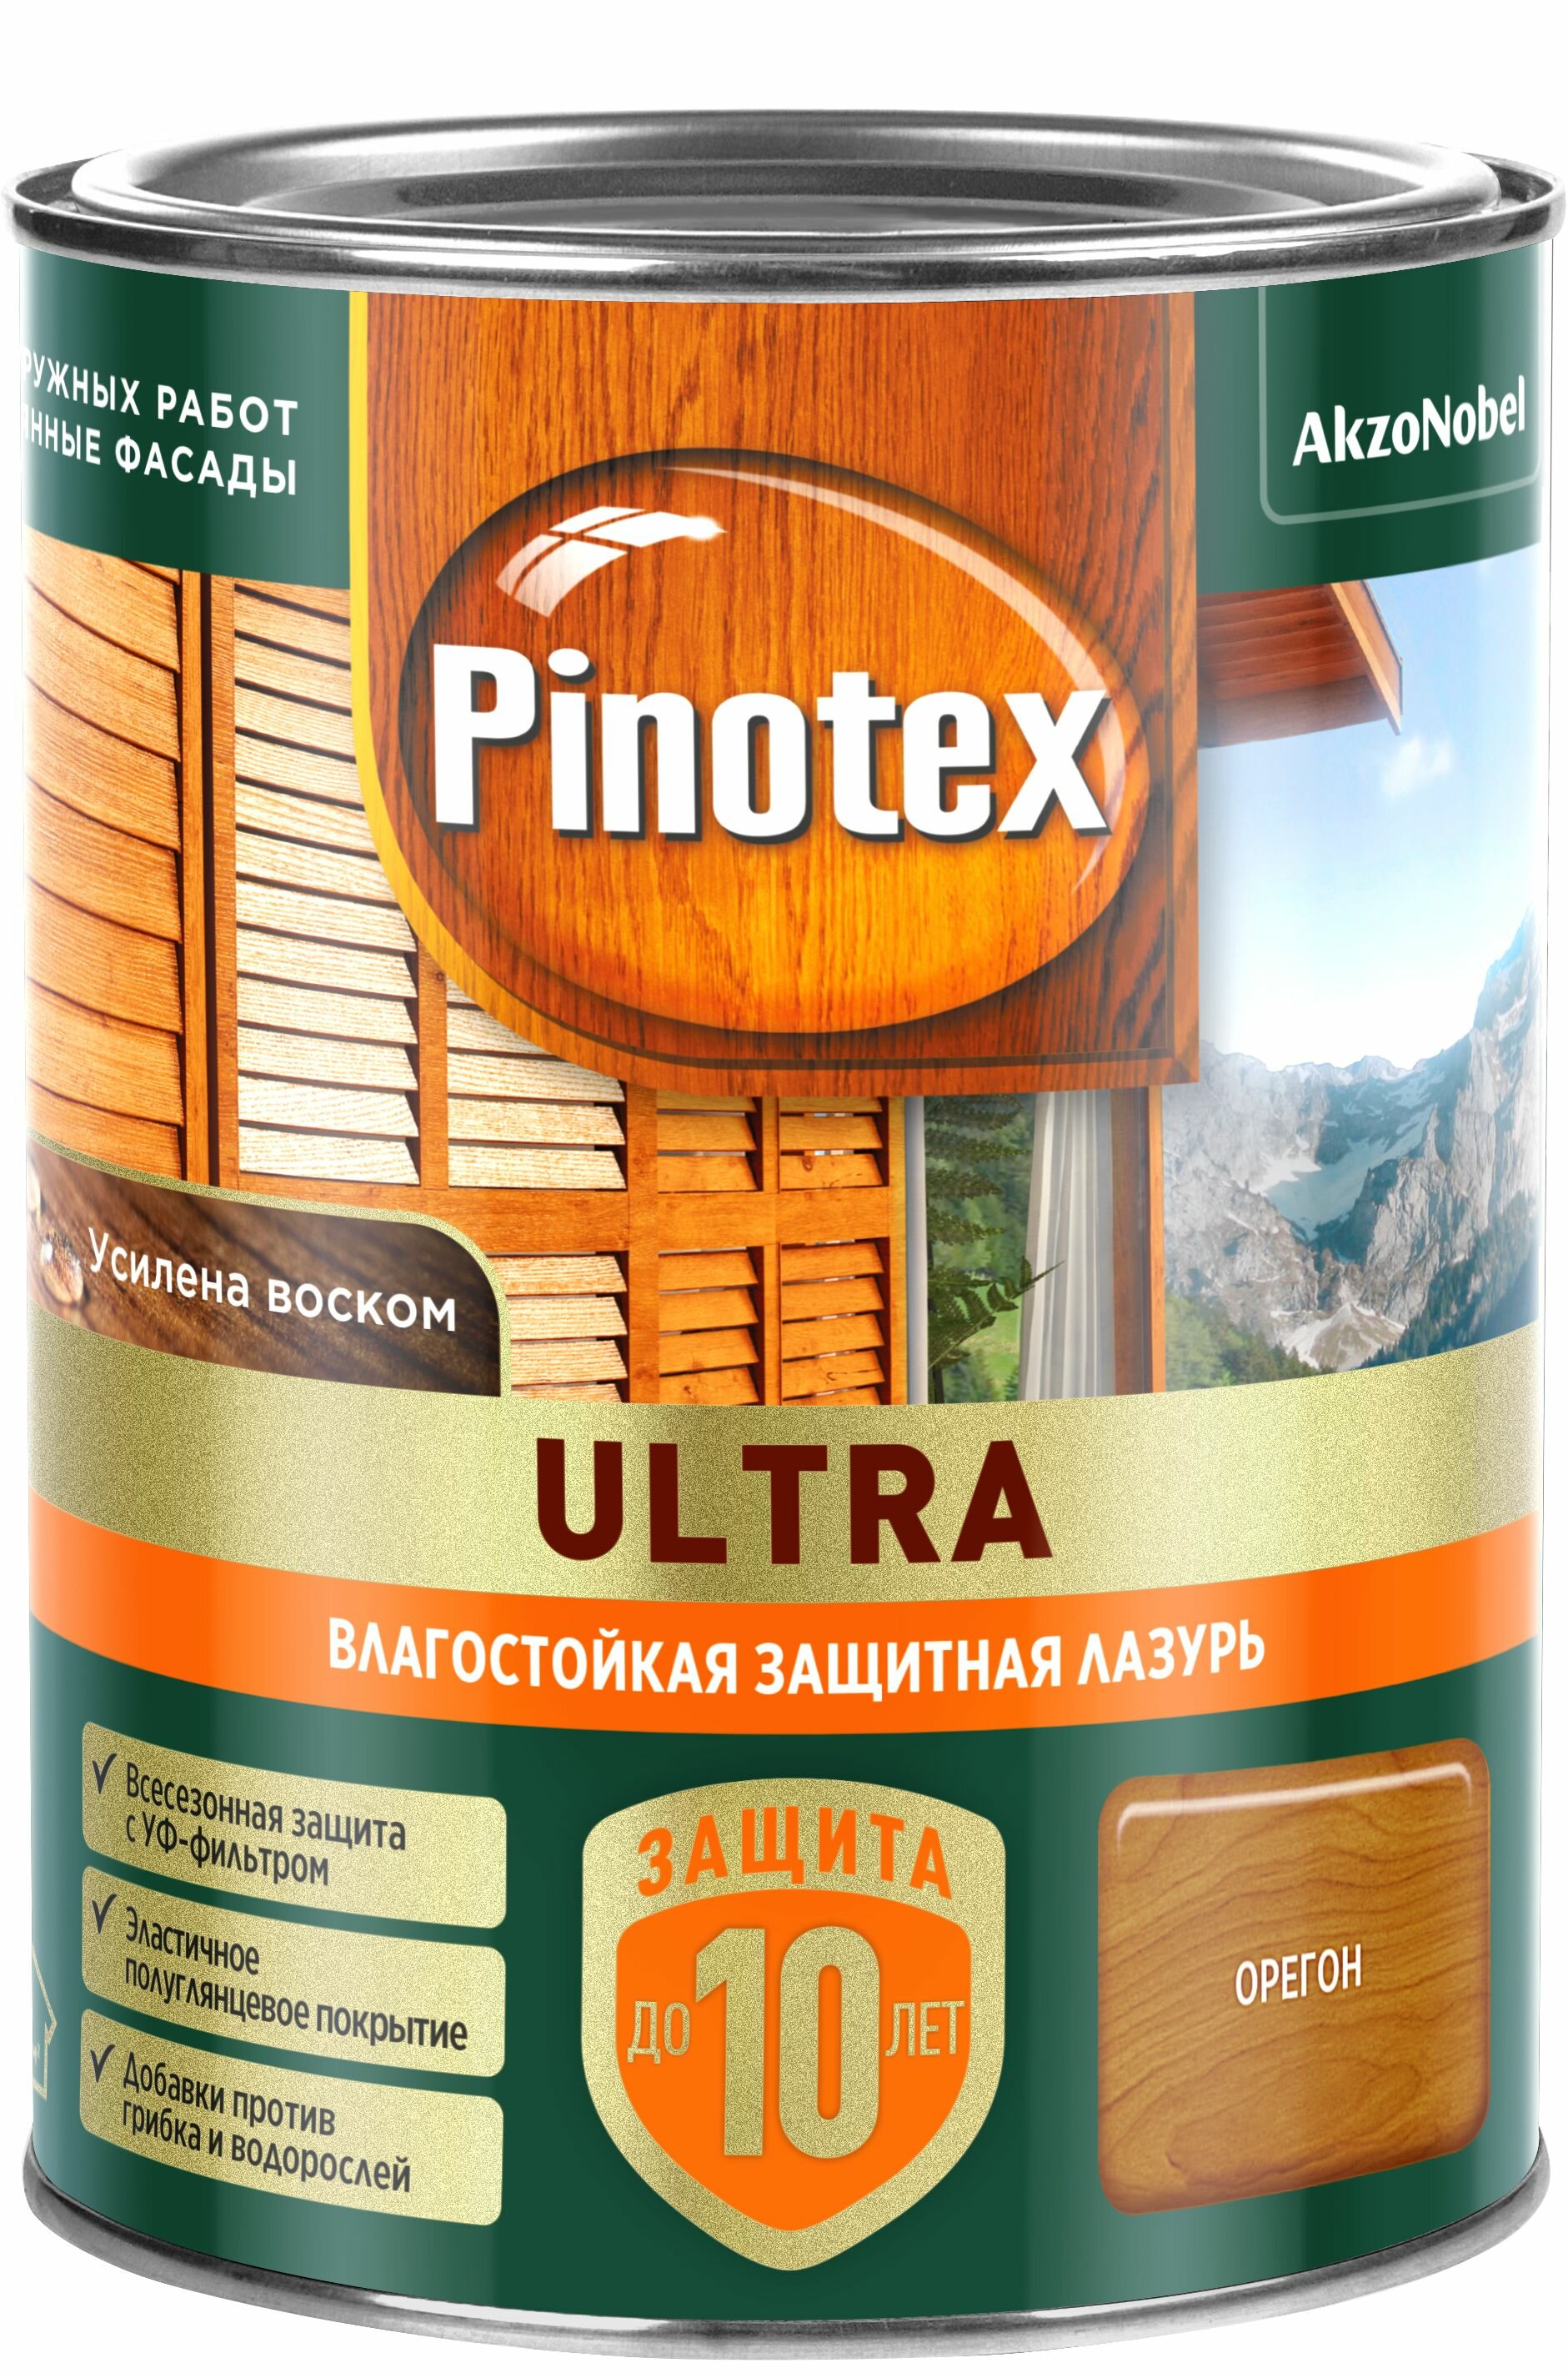 Влагостойкая защитная лазурь Ultra орегон 09л Pinotex 5803746